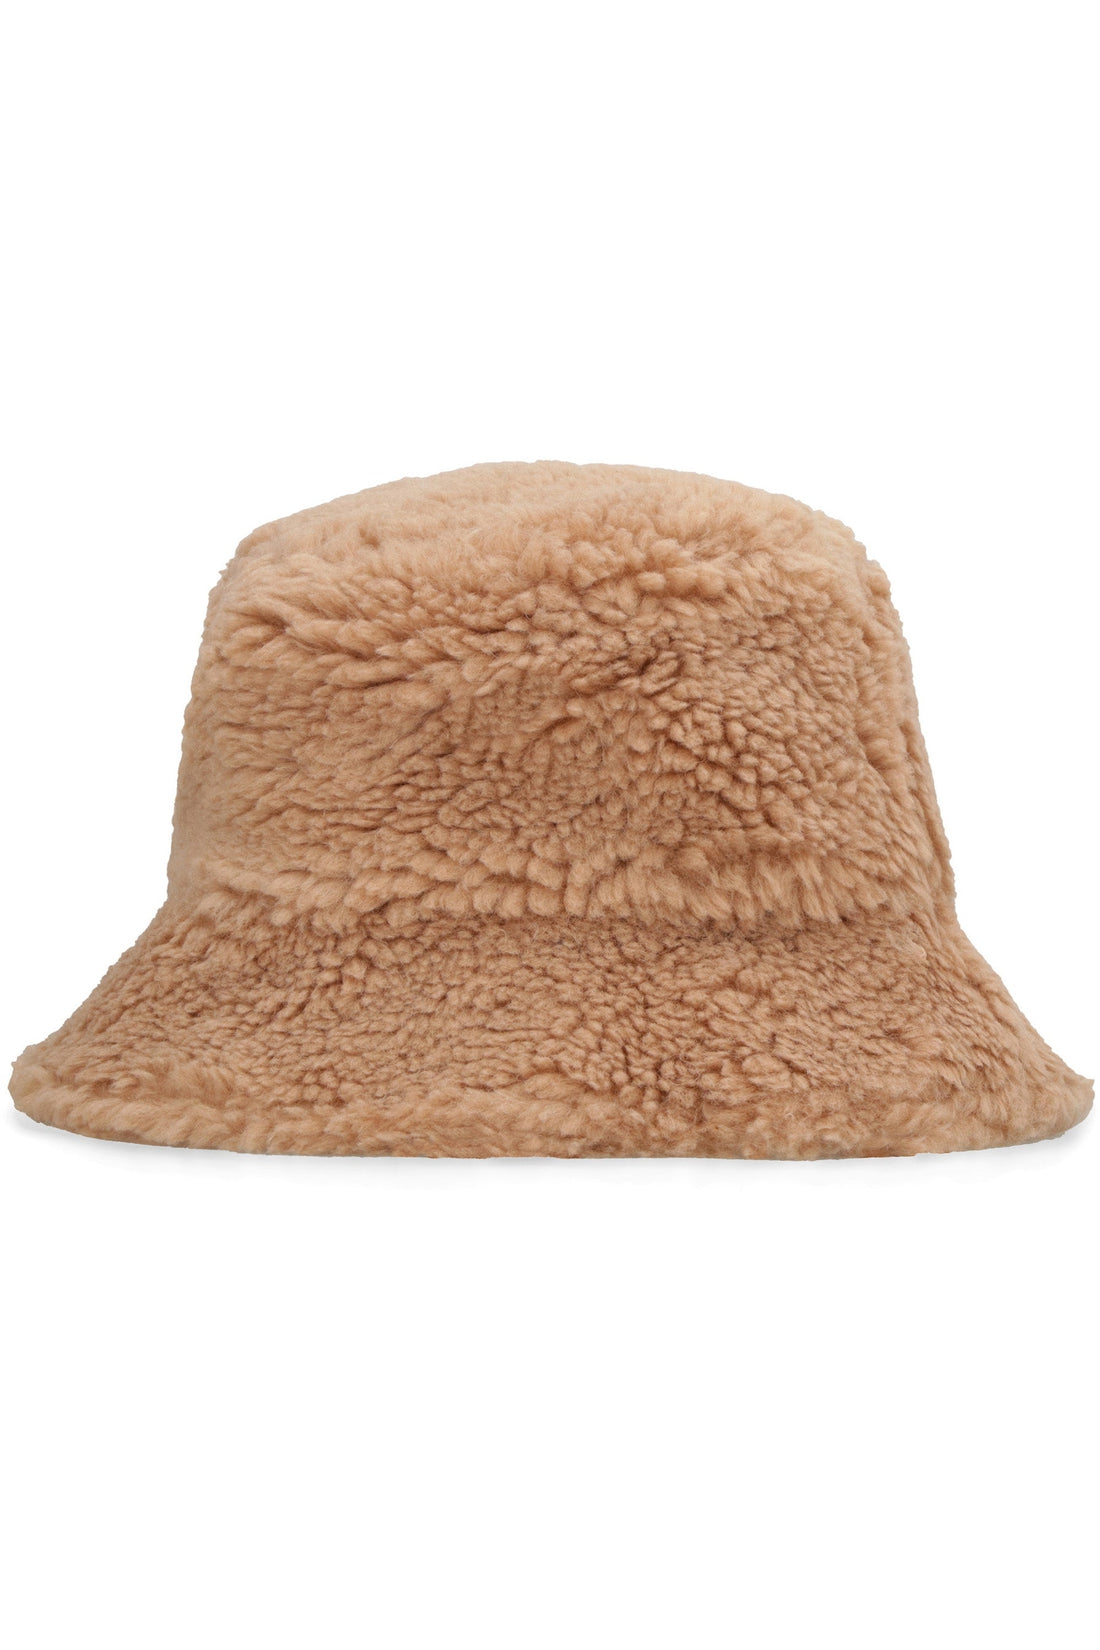 Stand Studio-OUTLET-SALE-Wera faux fur bucket hat-ARCHIVIST